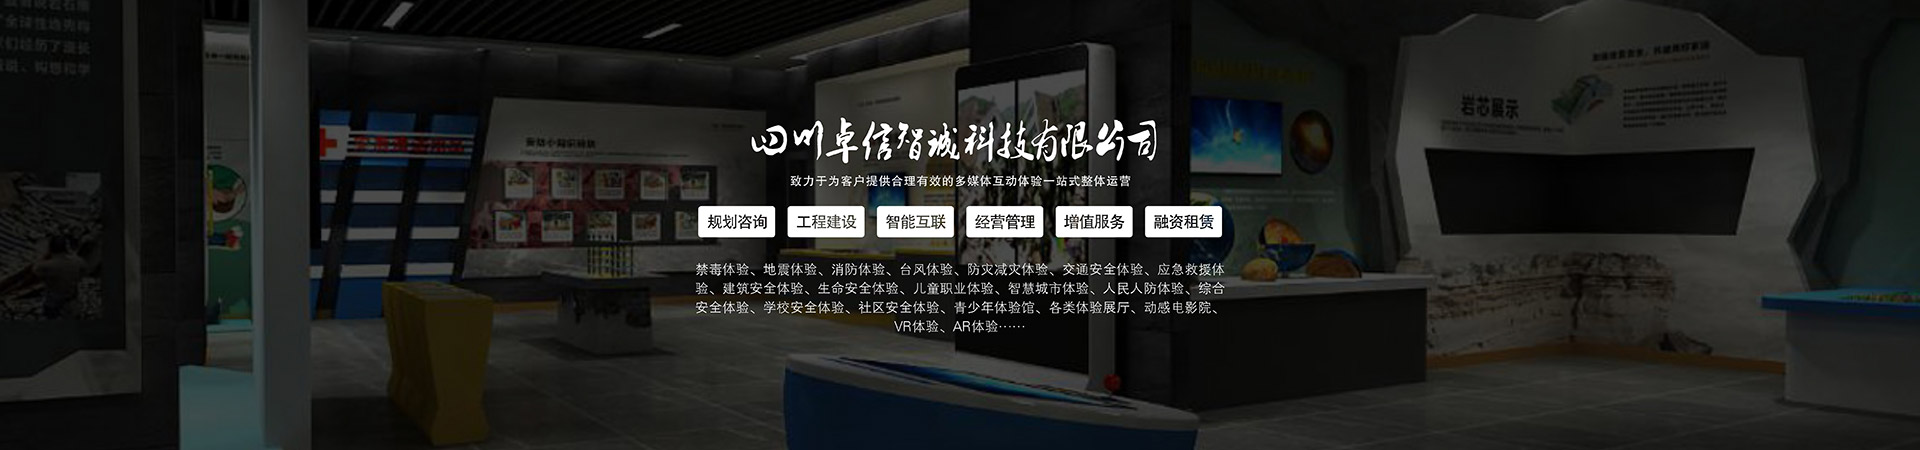 公共安全虚拟迎宾系统模拟仿真数字展厅